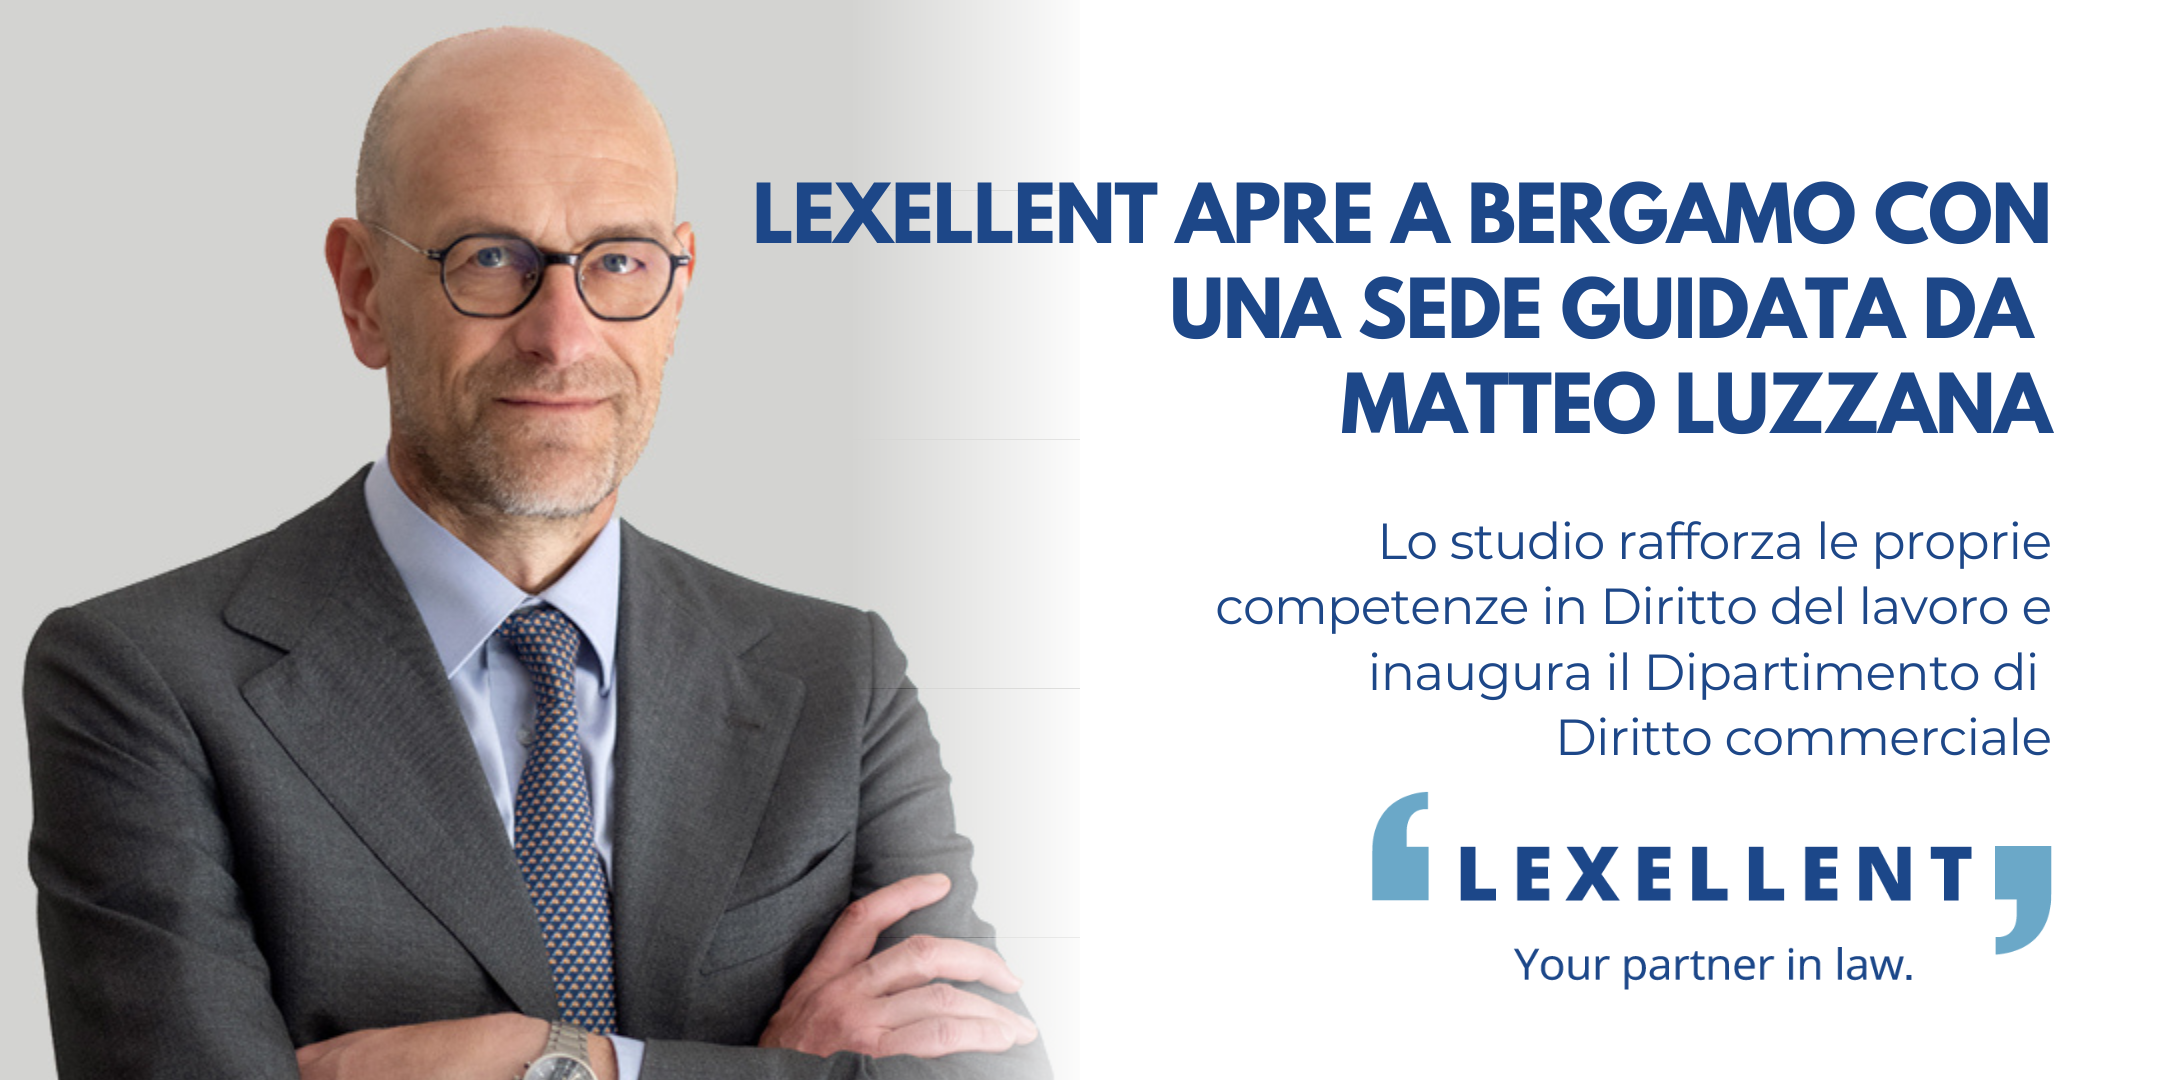 Lexellent apre a Bergamo con una nuova sede guidata dall’avv. Matteo Luzzana e rafforza ulteriormente le competenze interne in diritto commerciale e societario